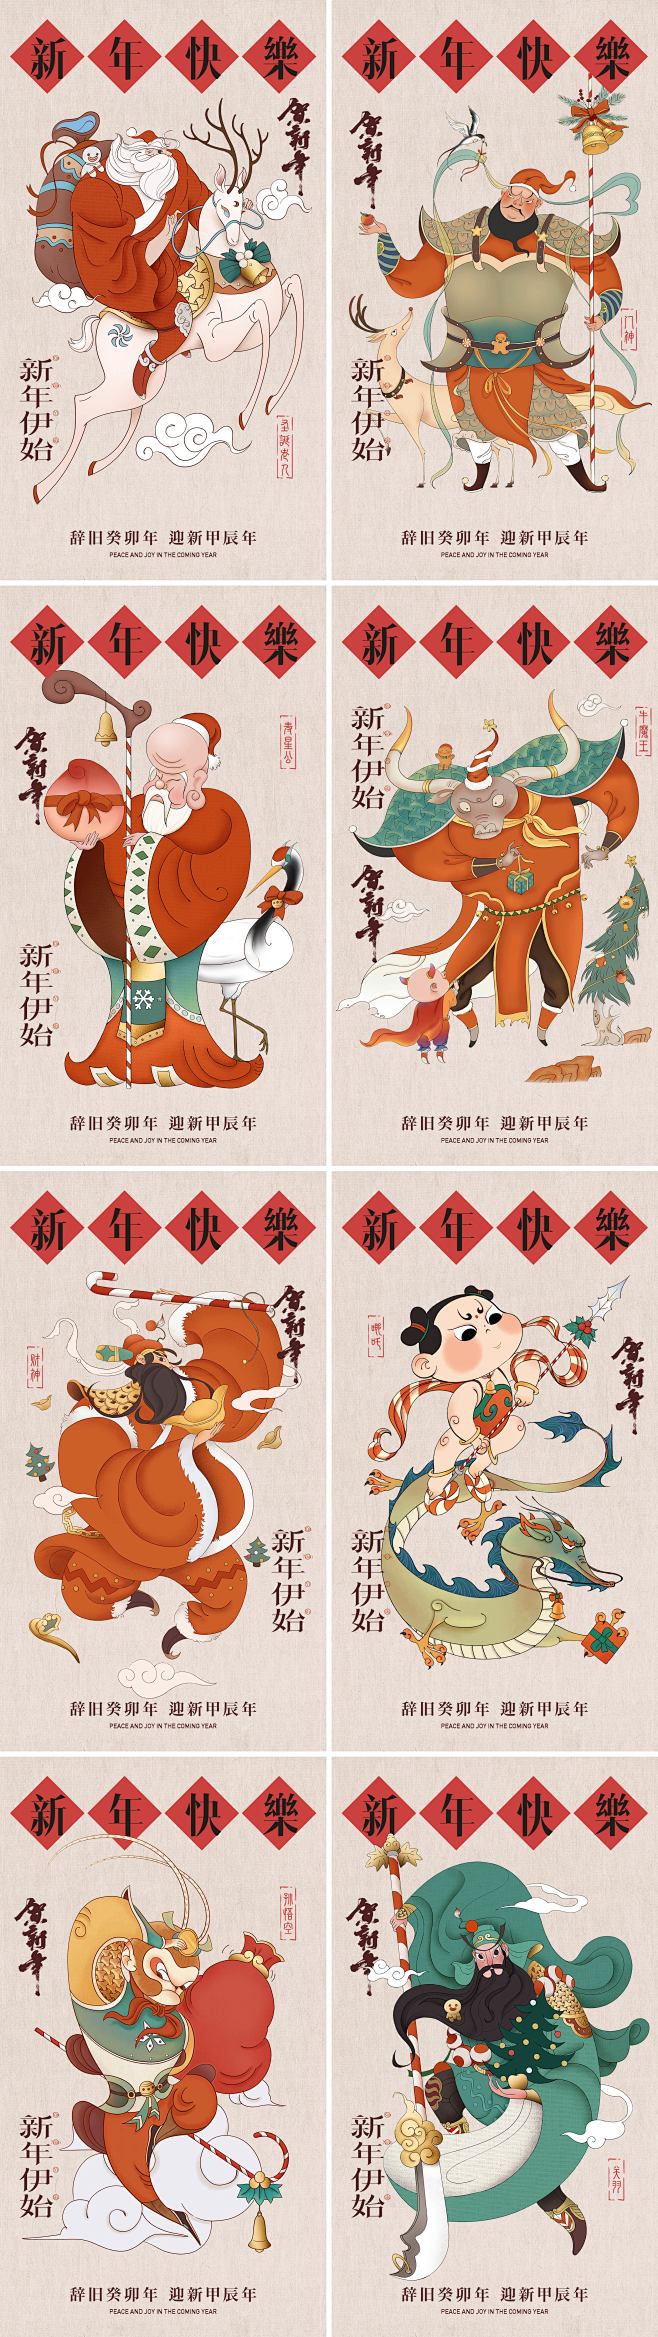 新年快乐中国神话人物系列海报